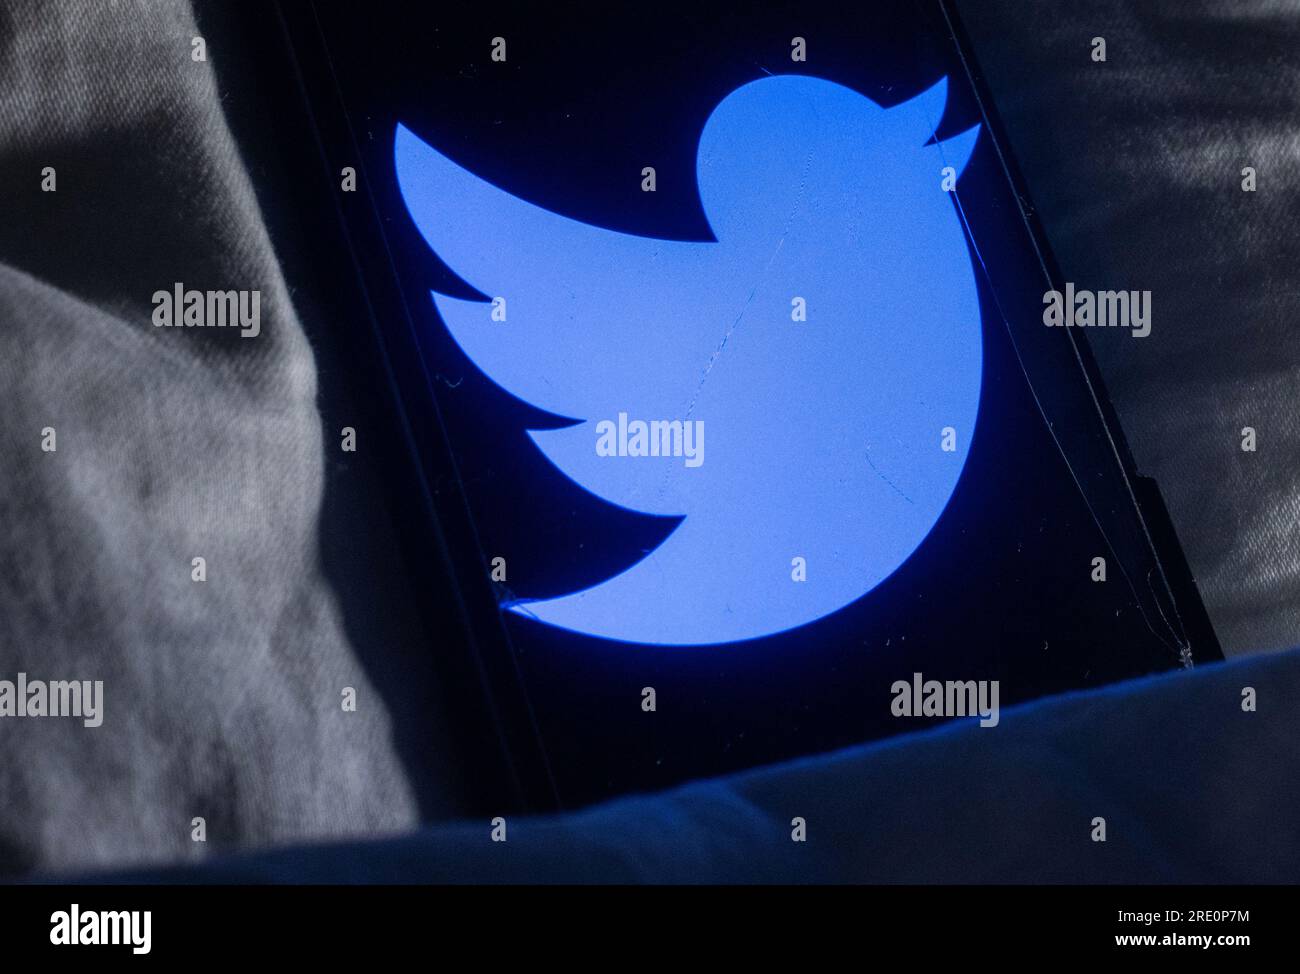 L'uccello di Twitter dormirà presto? Elon Musk scrive sui social media che l'uccello di Twitter sarà sostituito da un nuovo logo e il nome sarà sostituito da "X". Foto Stock